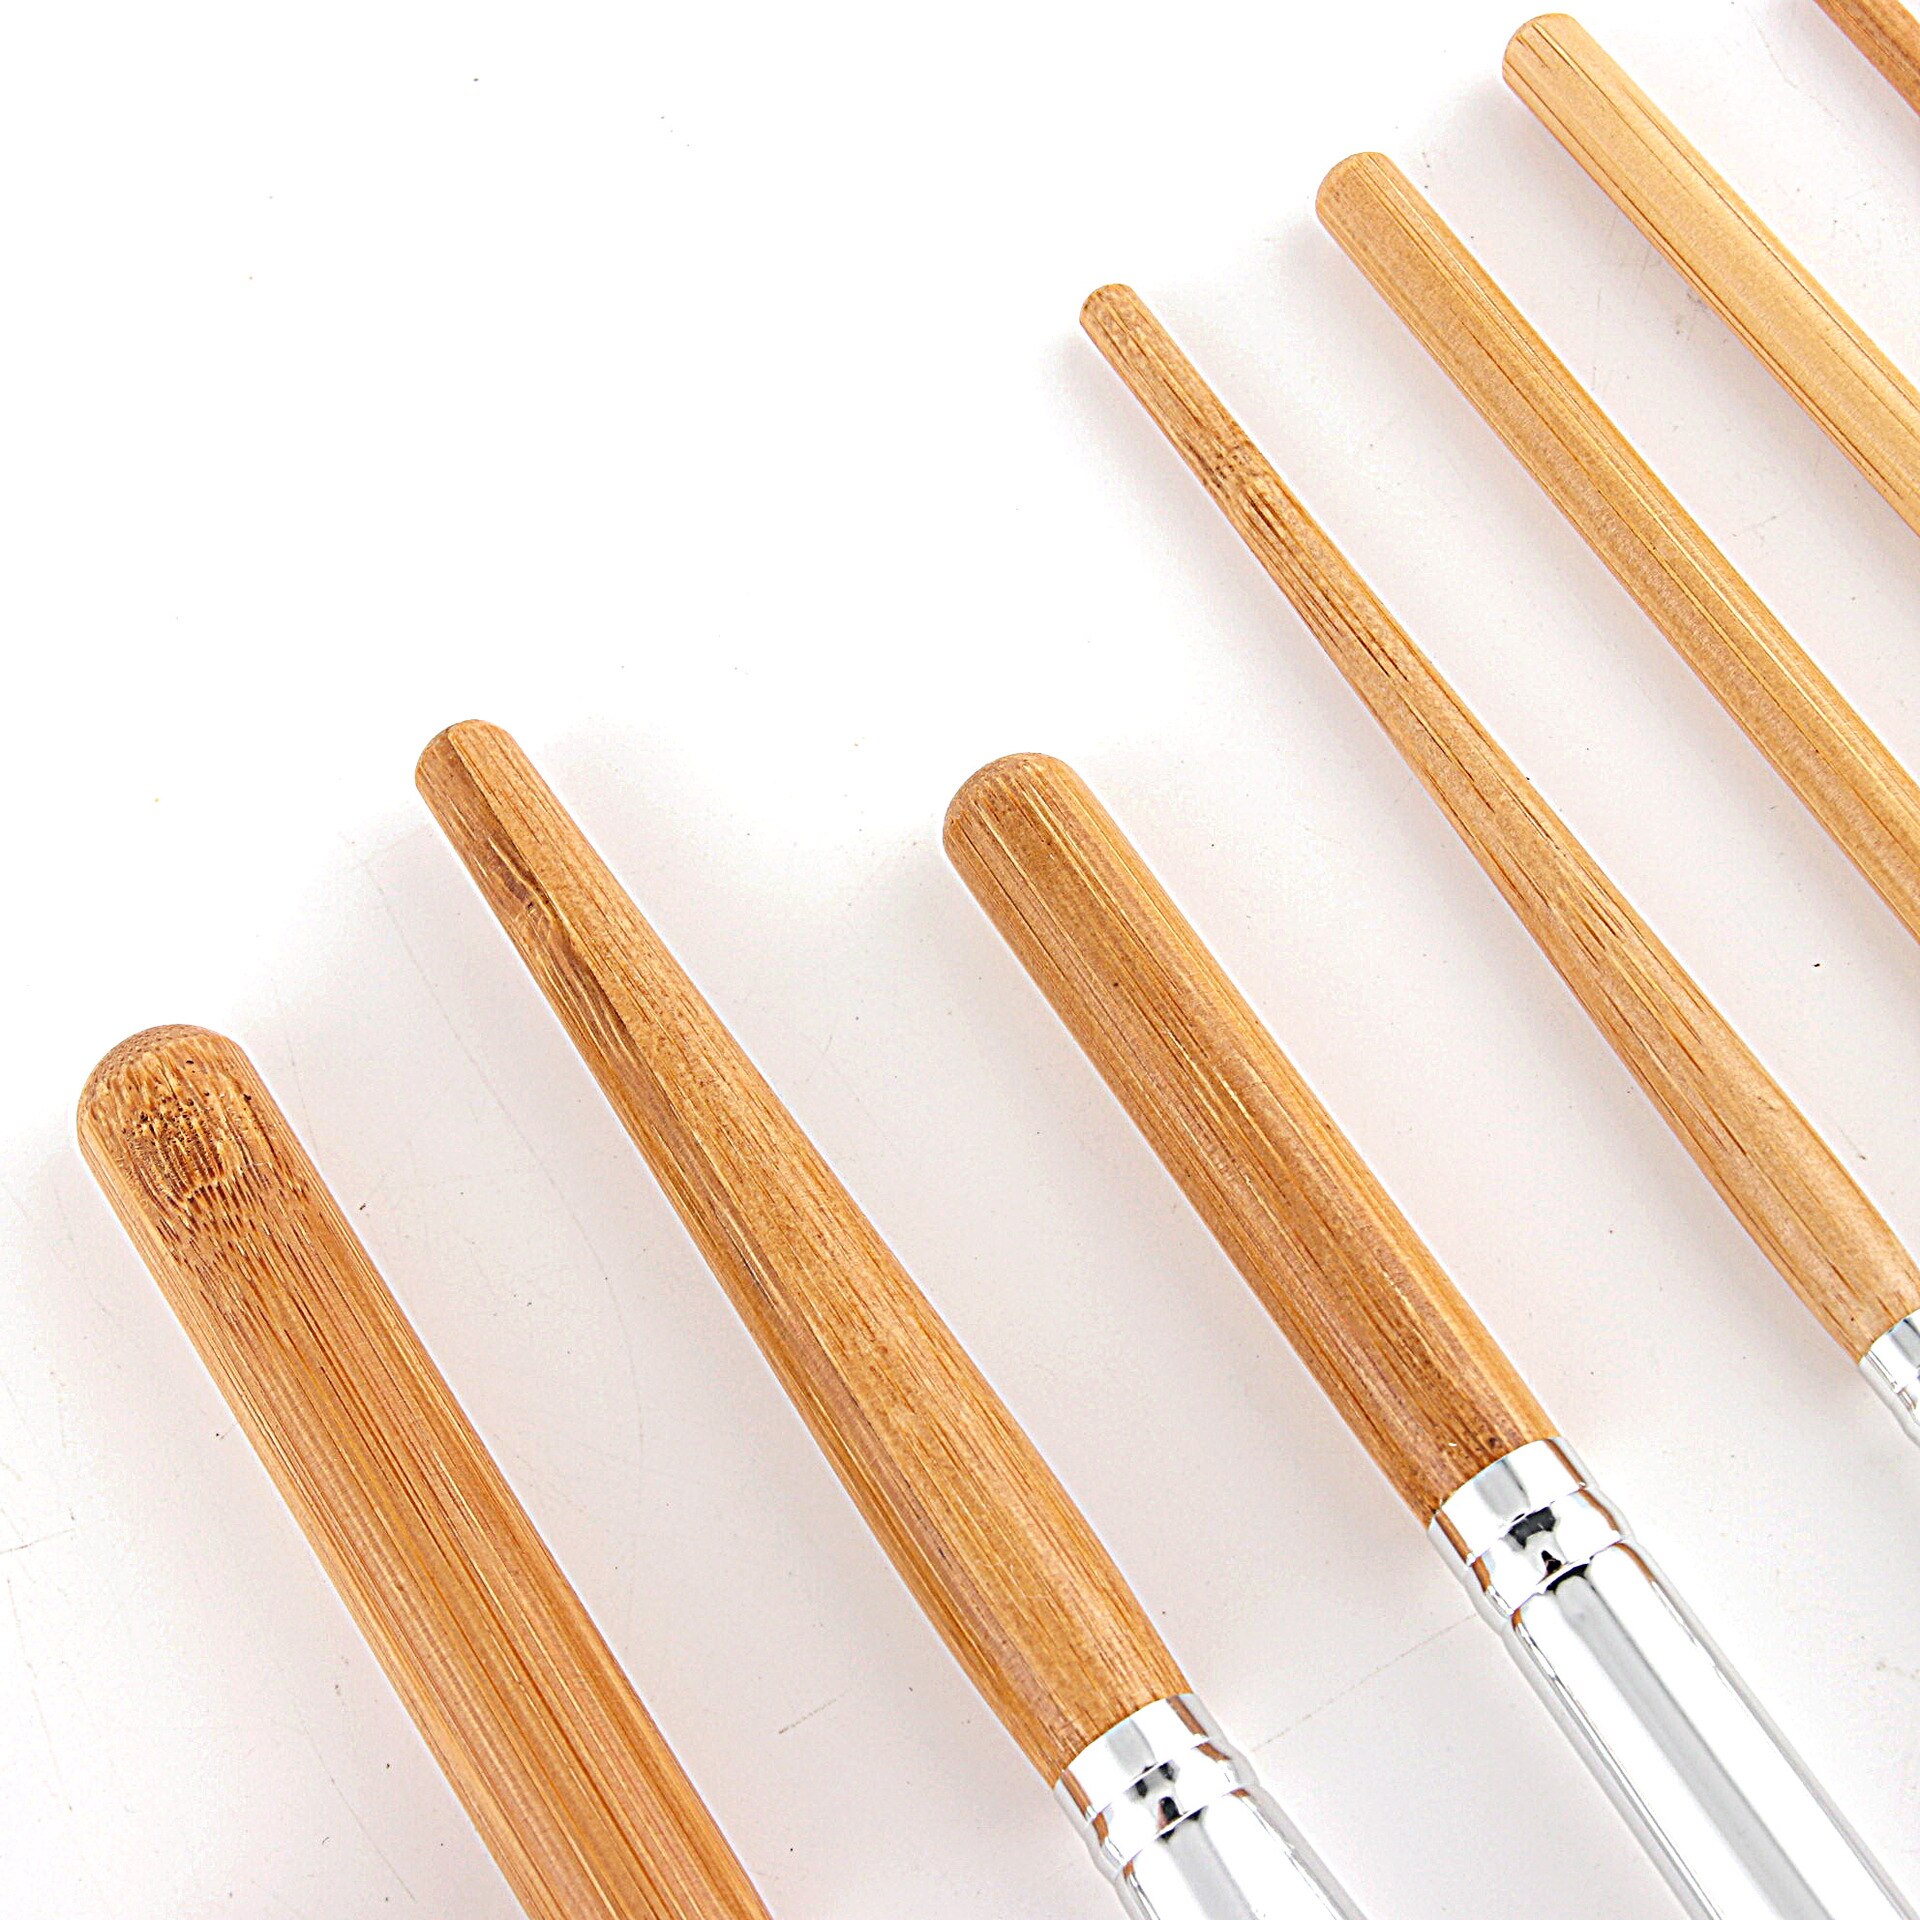 11 stk naturligt bambus håndtag makeup børster sæt foundation blending kosmetisk make-up værktøjssæt med bomuldspose